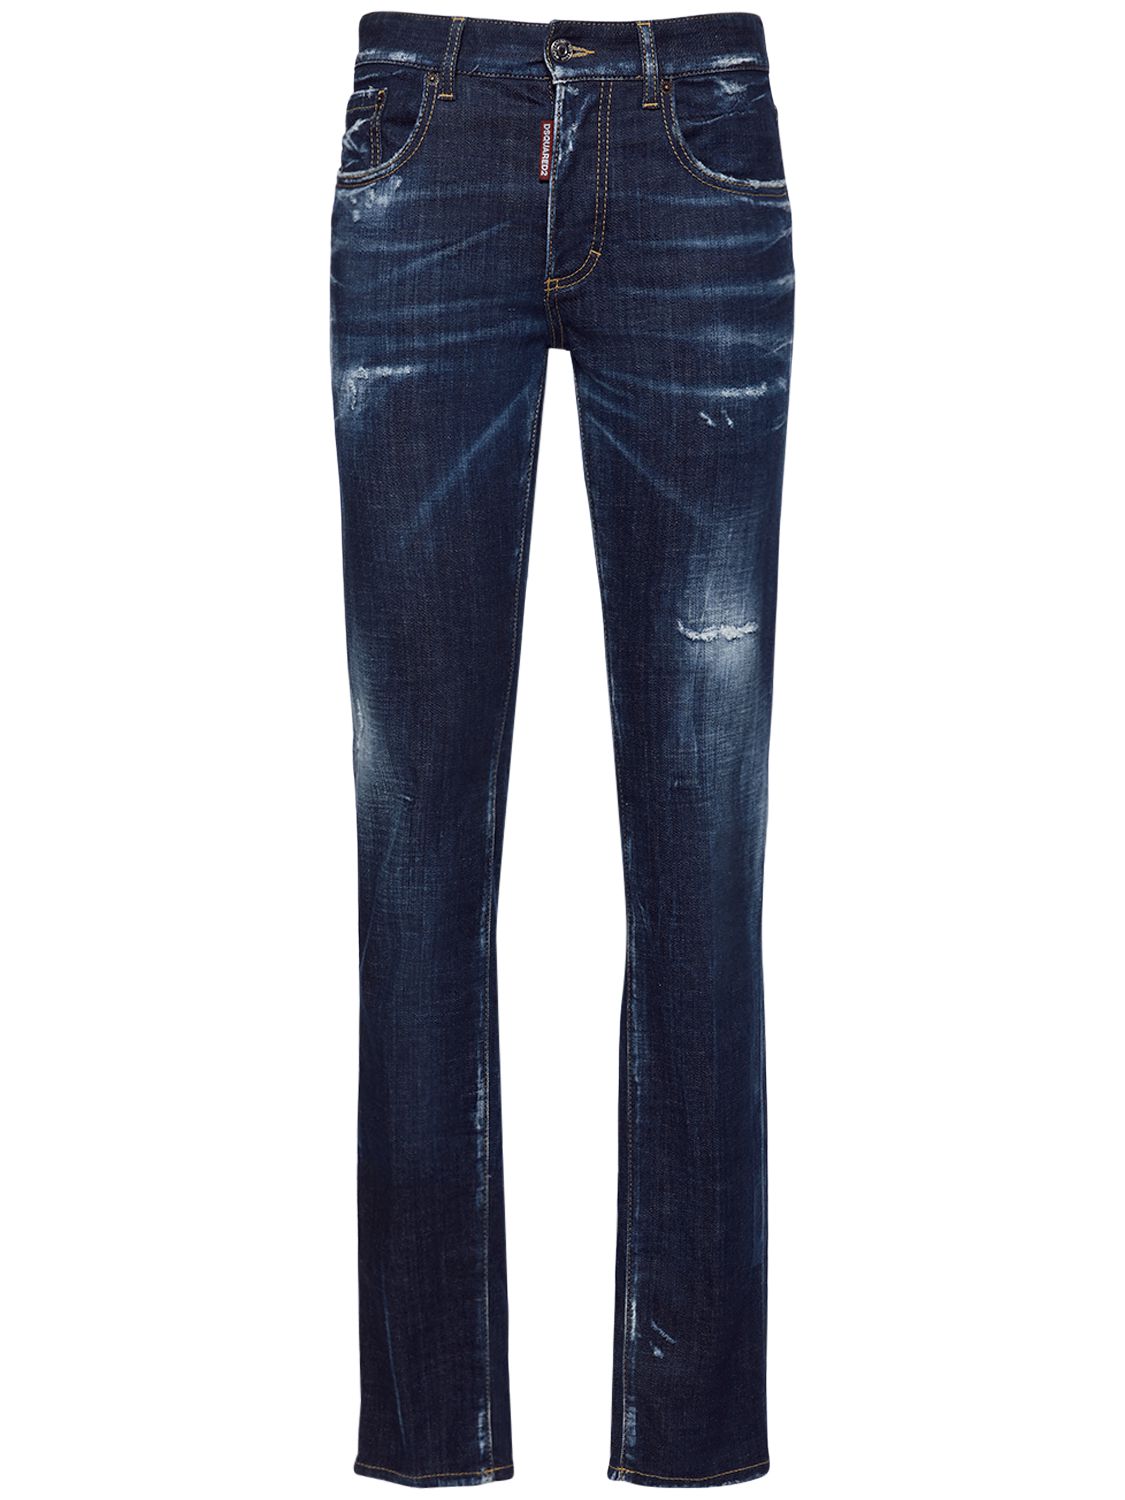 Jeans Loose Fit 24/7 In Denim Stretch - DSQUARED2 - Modalova